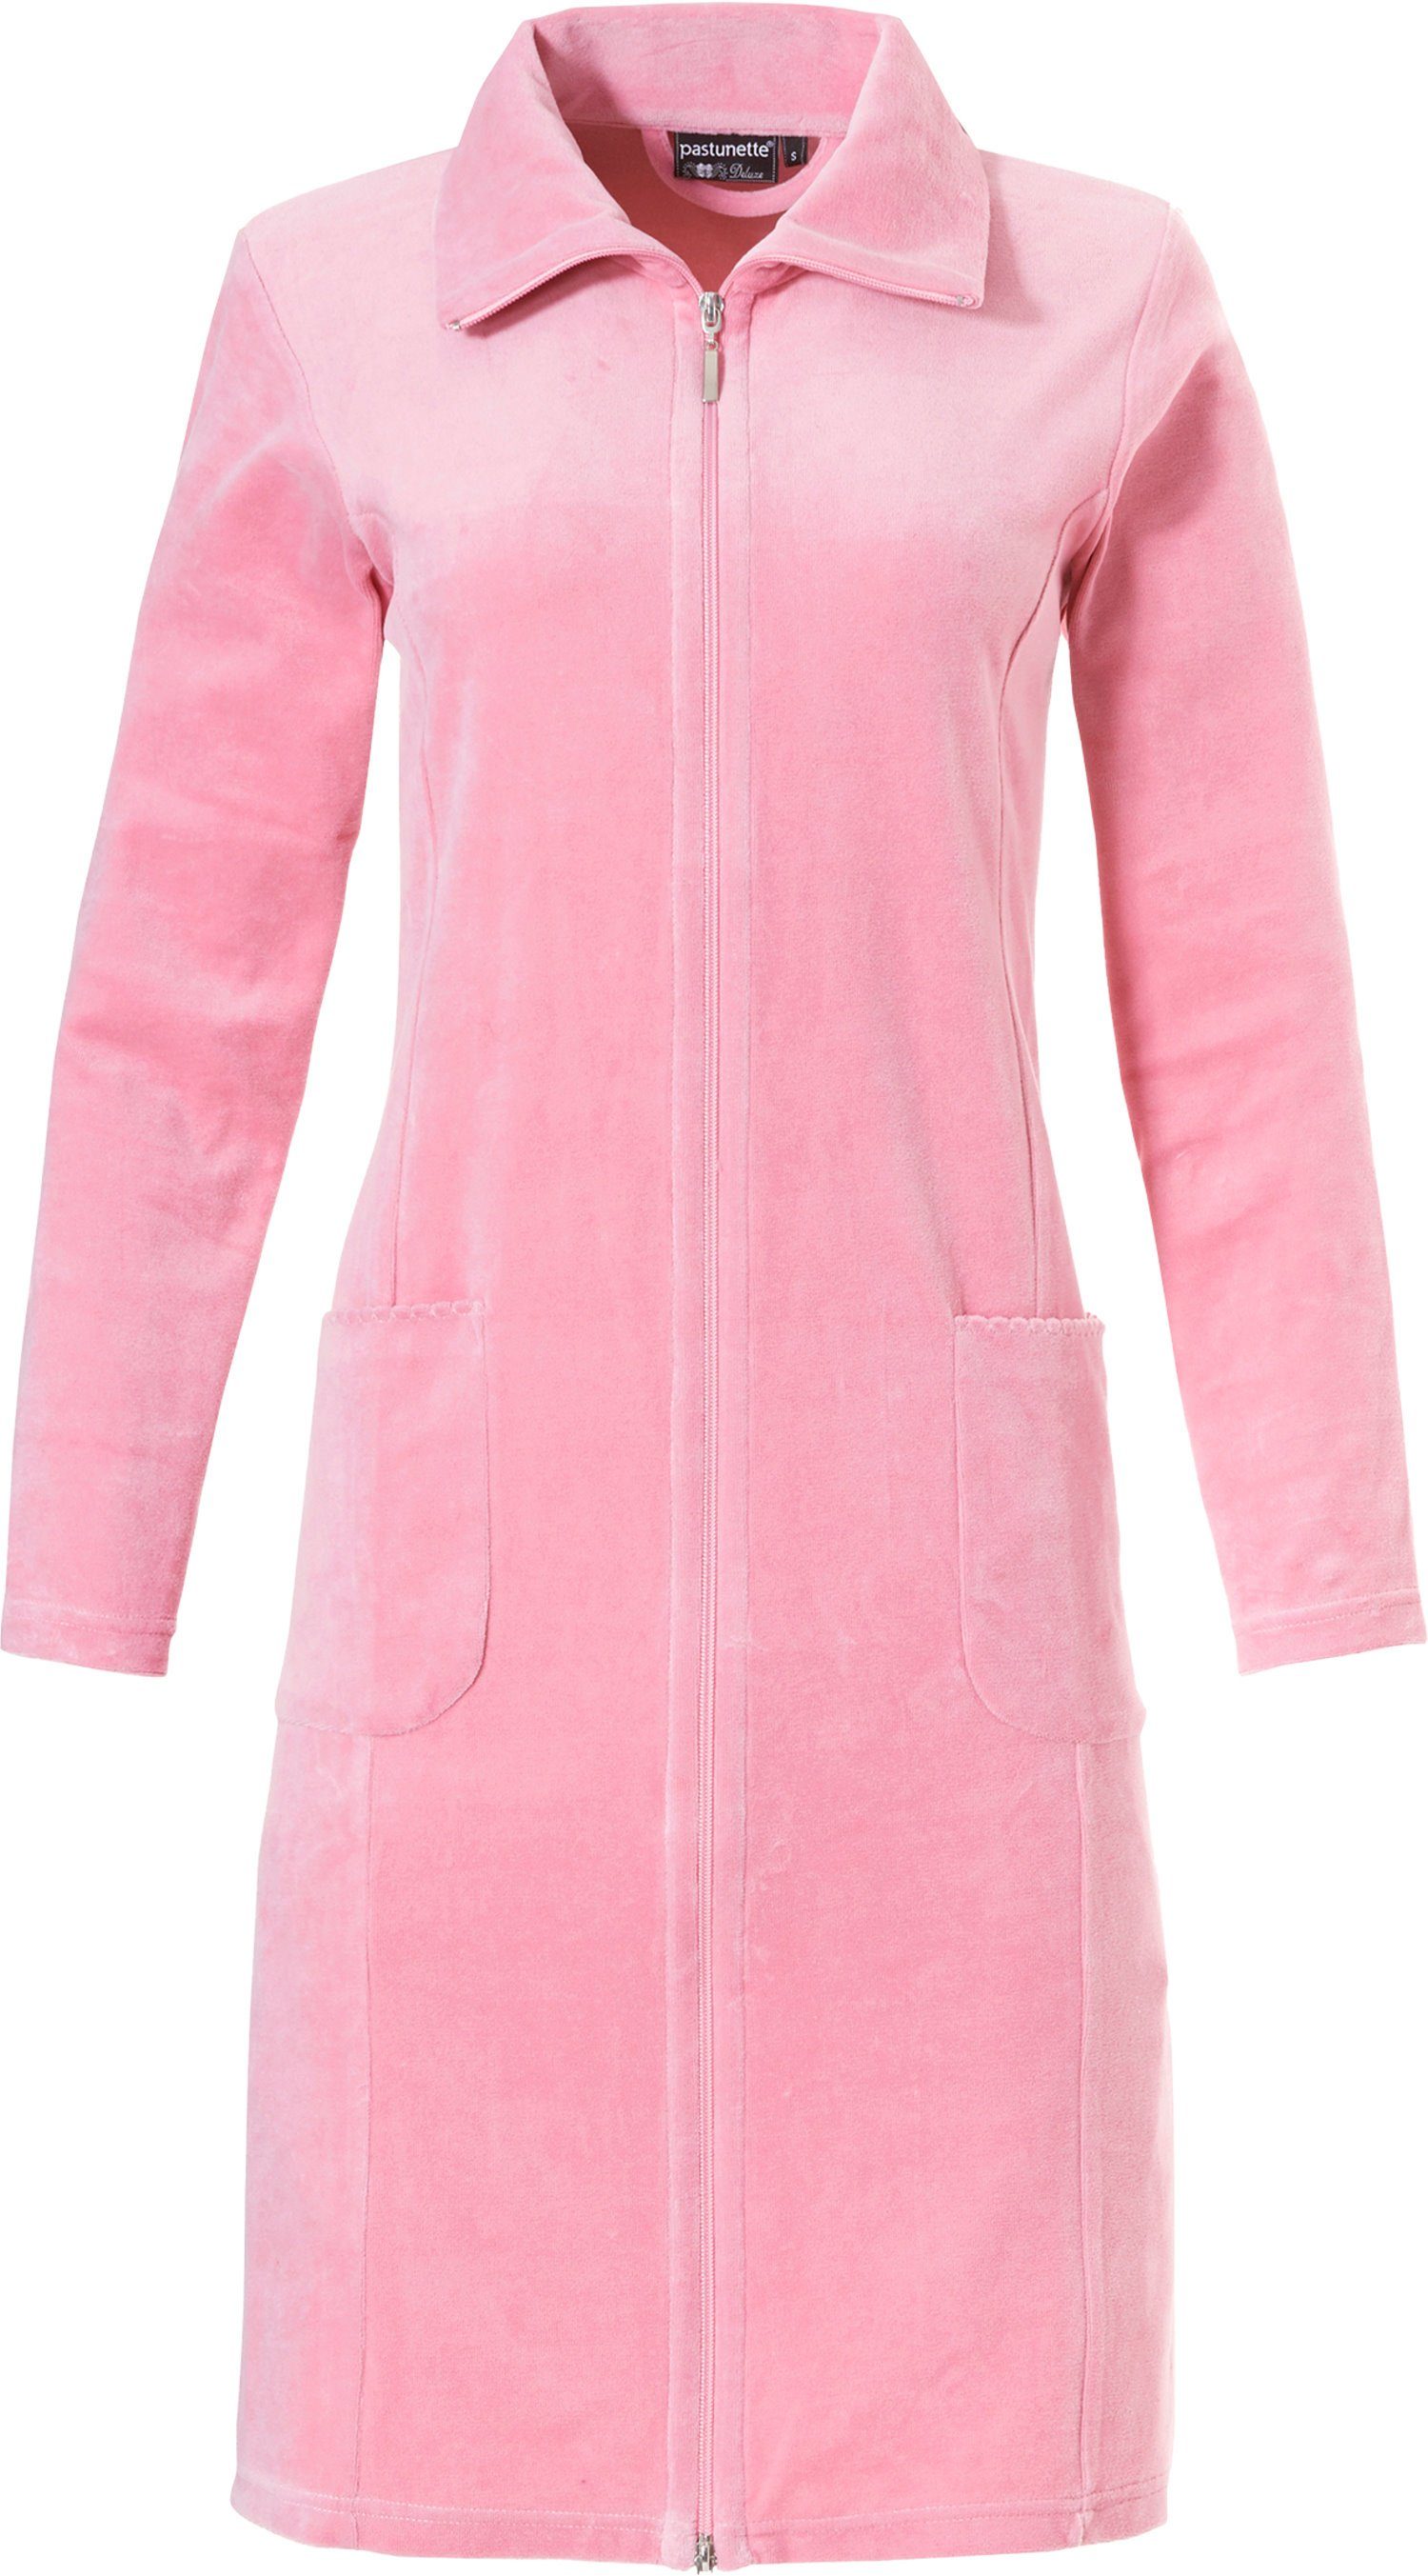 Pastunette Damenbademantel Nikki Damen Reißverschluss, Stehkragen, Bademantel mit klassisch Baumwollmischung, Reißverschluss, pink